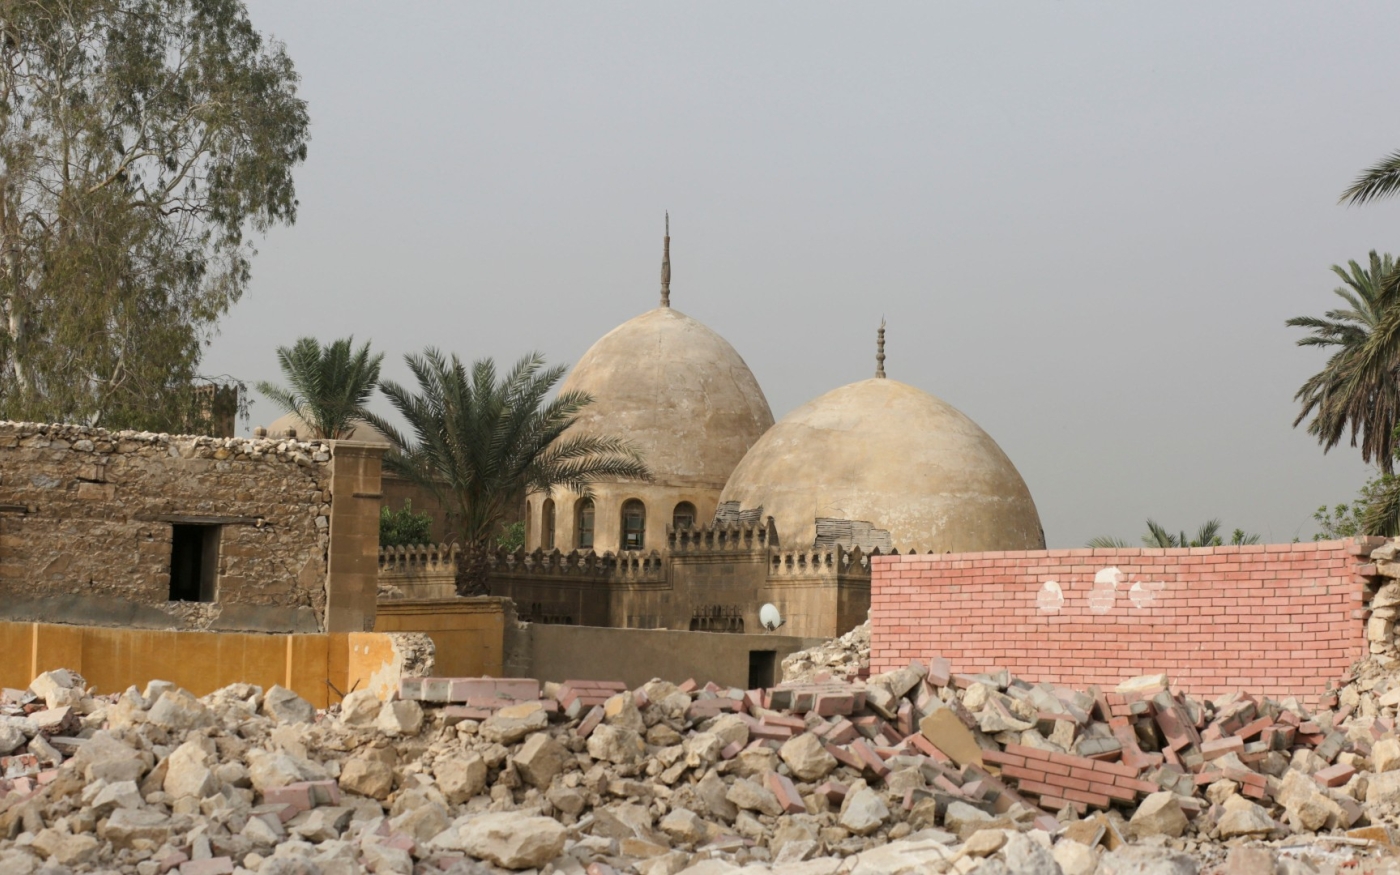 Vue du cimetière Qarafa Imam al-Shafi’i détruit, au Caire, dans le cadre de nouveaux travaux sur la route Salah Salem, le 31 mai 2023 (Reuters)